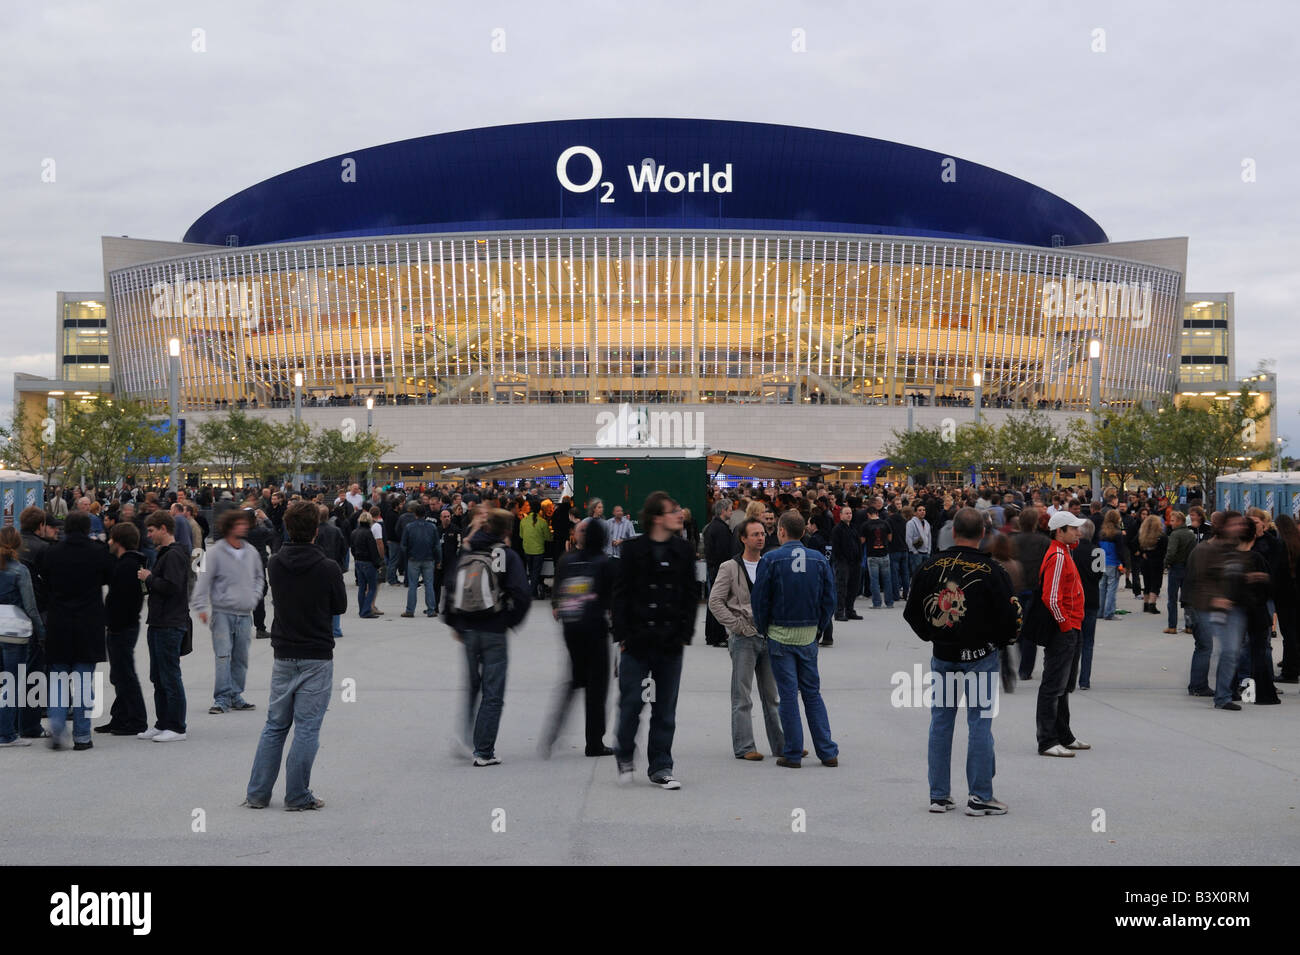 Berlin. O₂ World. O₂ Arena in Berlin-Friedrichshain. Stock Photo